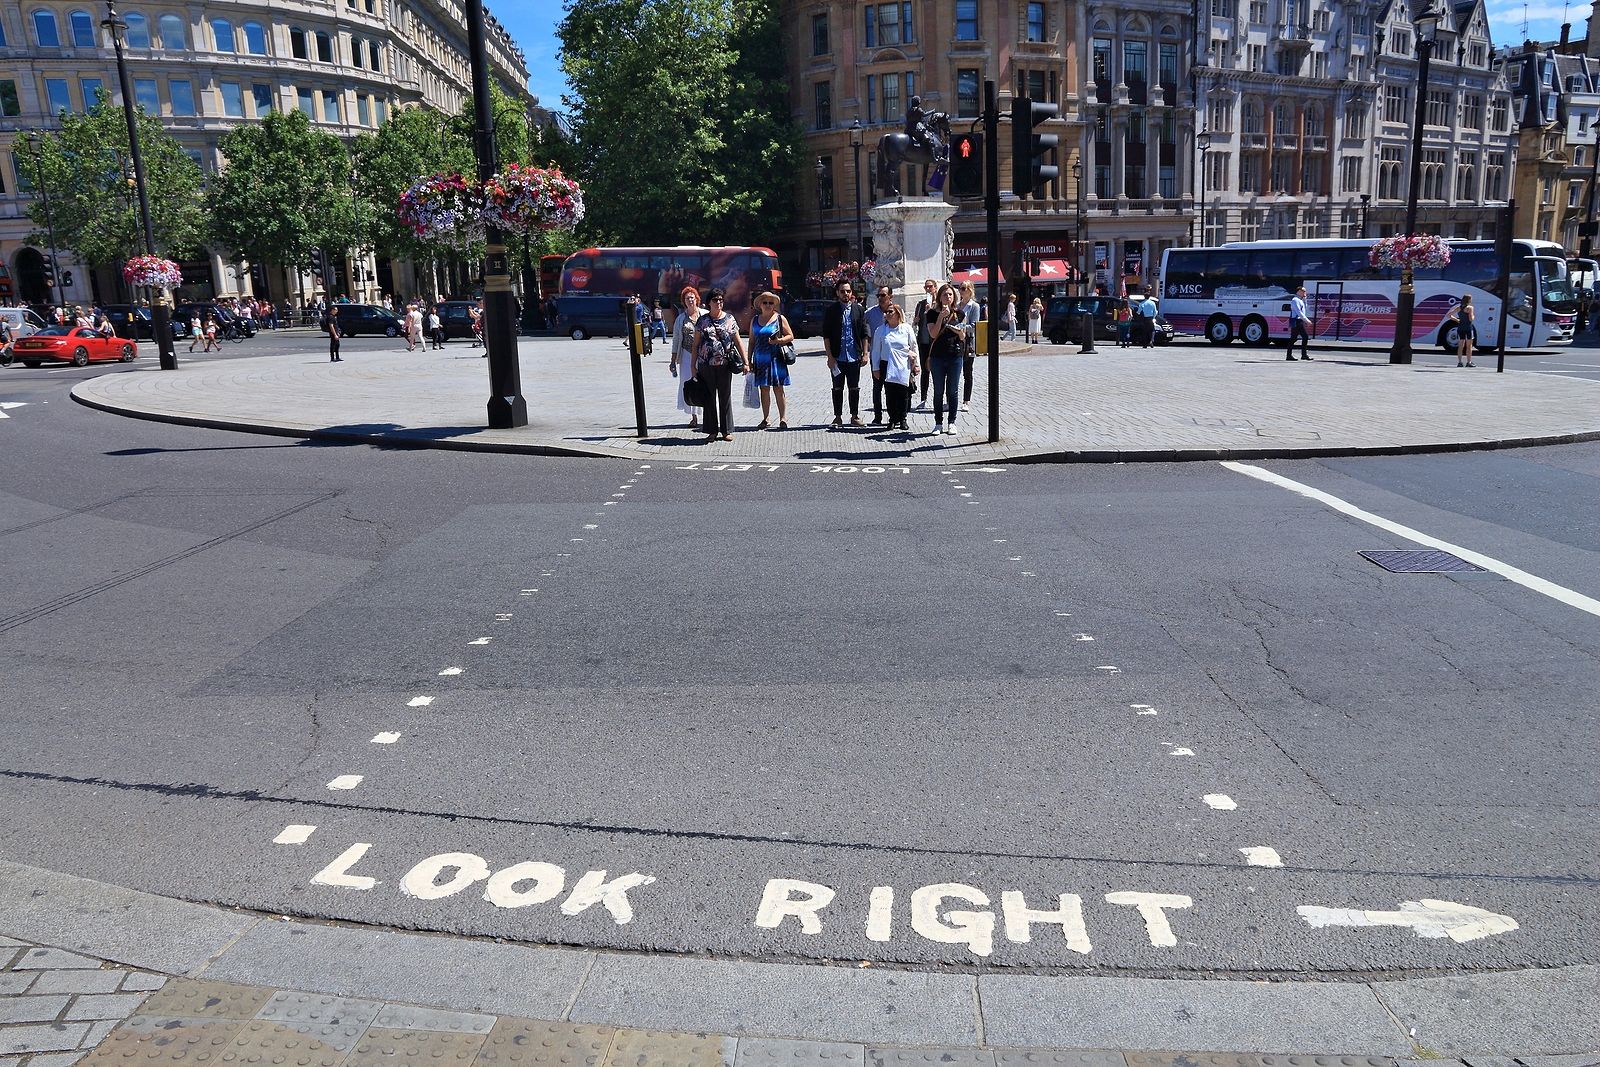 Reino Unido podría aumentar la duración de los semáforos: a los mayores no les da tiempo a cruzar